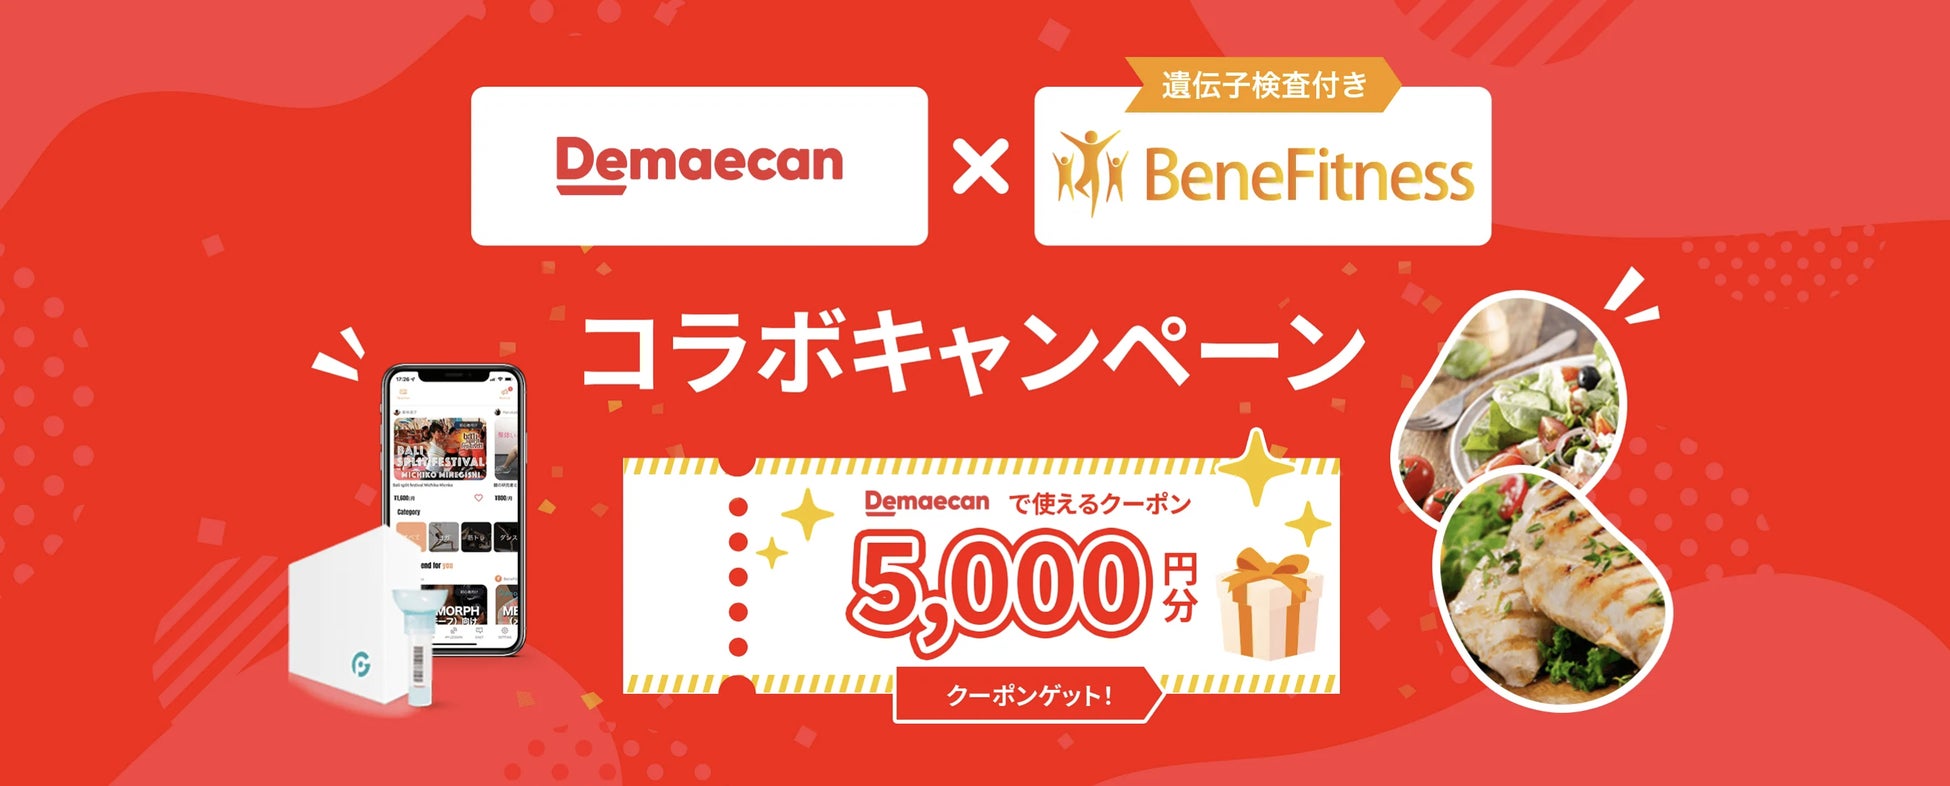 日本最大級のデリバリーサービス「出前館」と遺伝子検査付き「BeneFitness」がコラボキャンペーンを開催決定。